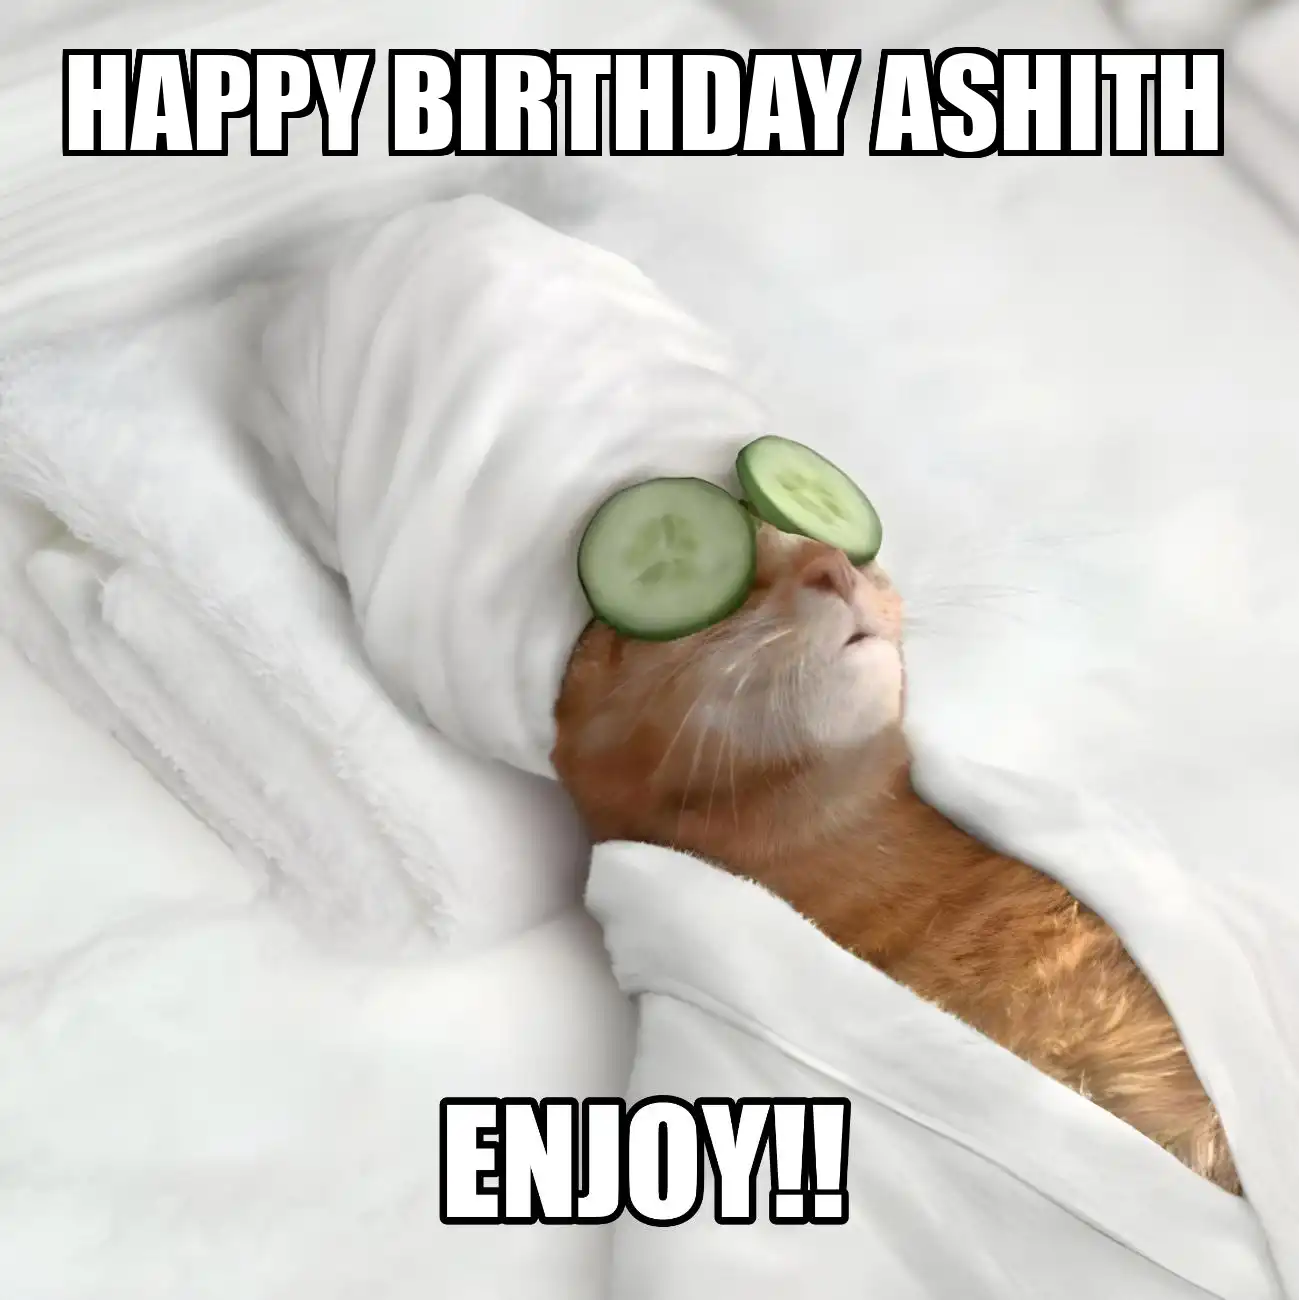 Happy Birthday Ashith Enjoy Cat Meme